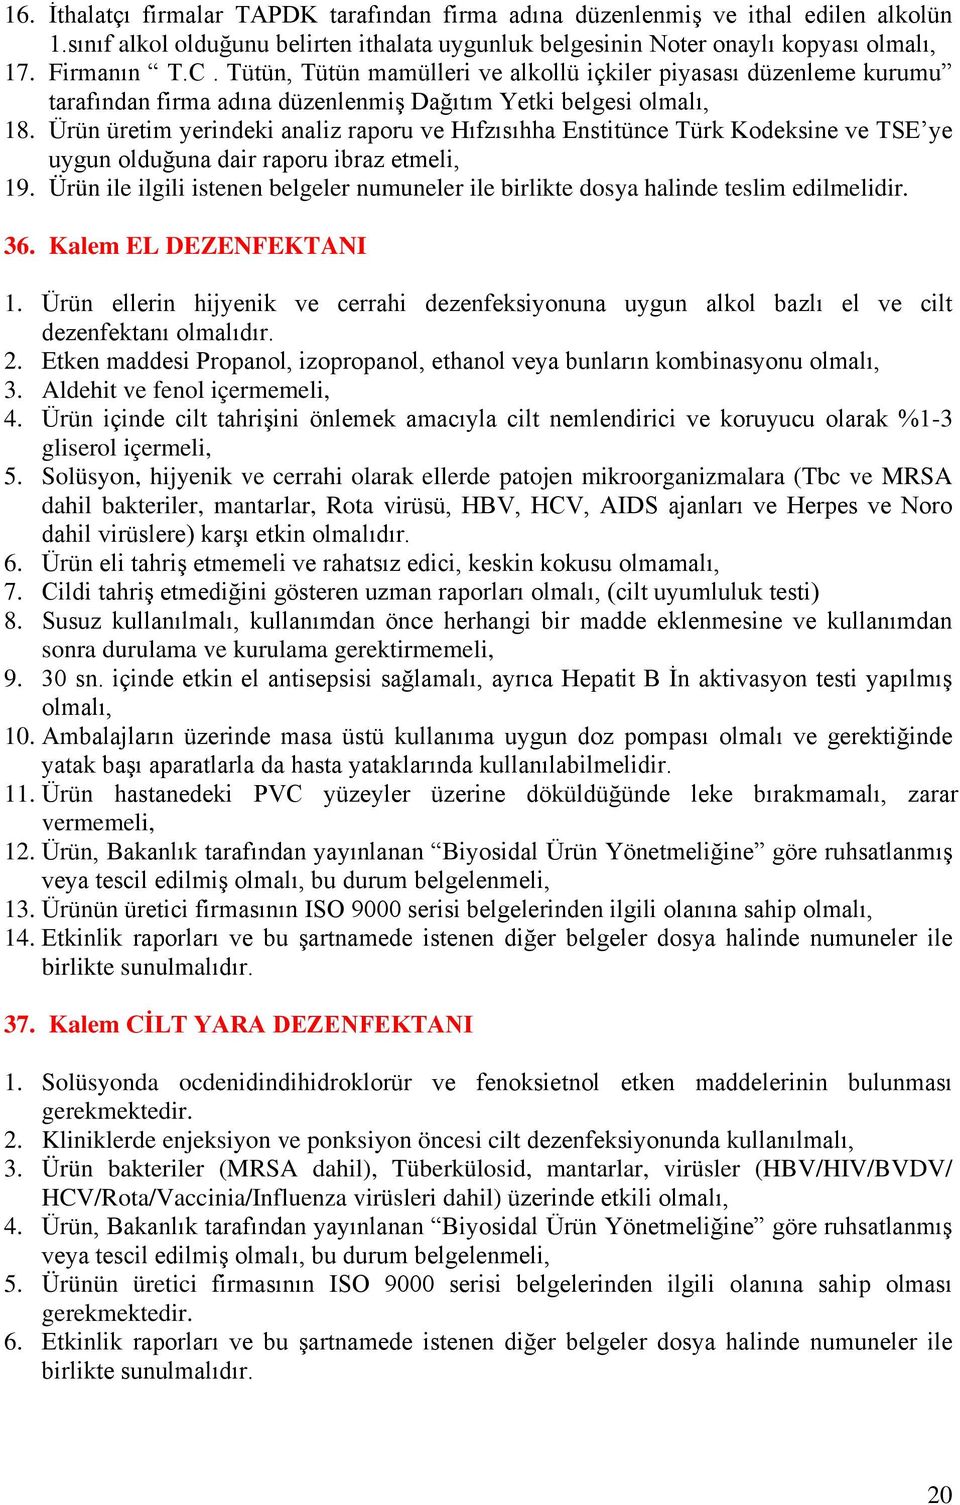 Ürün üretim yerindeki analiz raporu ve Hıfzısıhha Enstitünce Türk Kodeksine ve TSE ye uygun olduğuna dair raporu ibraz etmeli, 19.